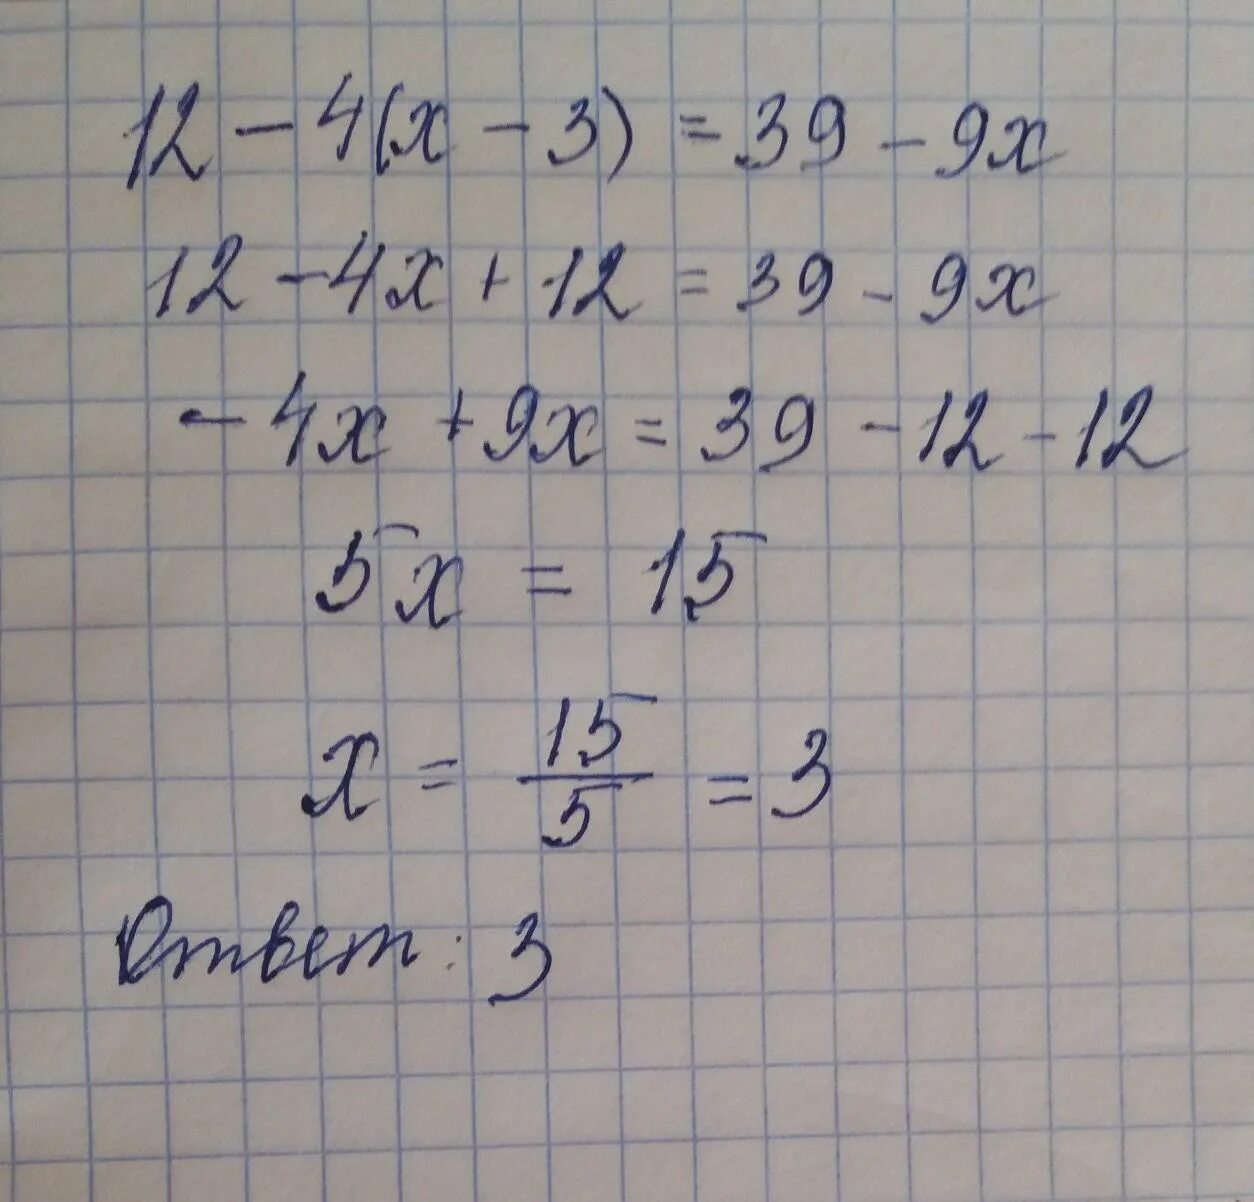 12-4(Х-3)=39-9х. 5х 3 12 решение. 3х 4у 12 решение. 4х+12=-4 решение.